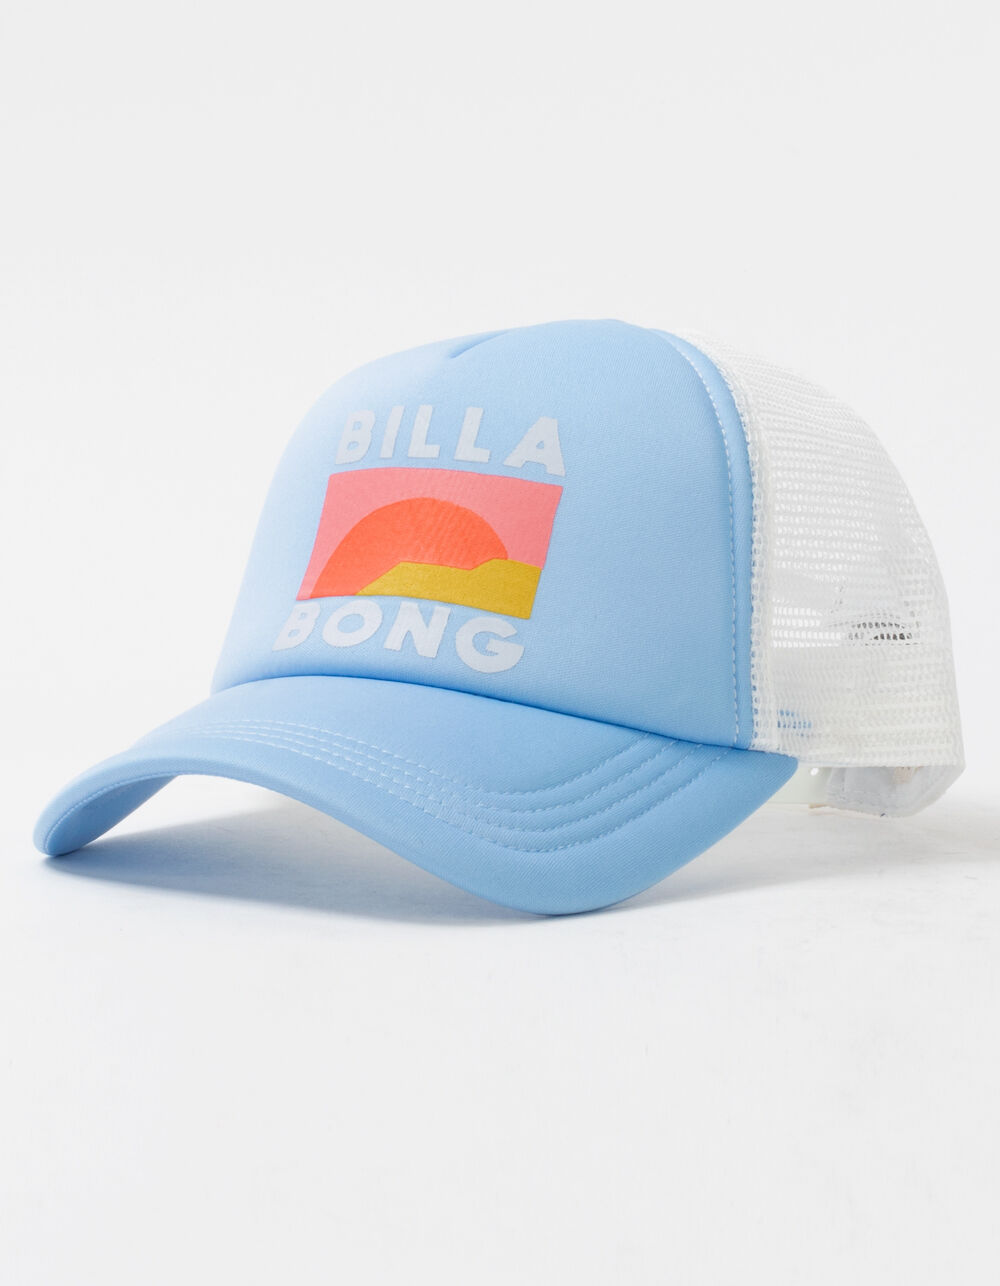 BILLABONG Across Waves Womens Trucker Hat - BLUE | Tillys